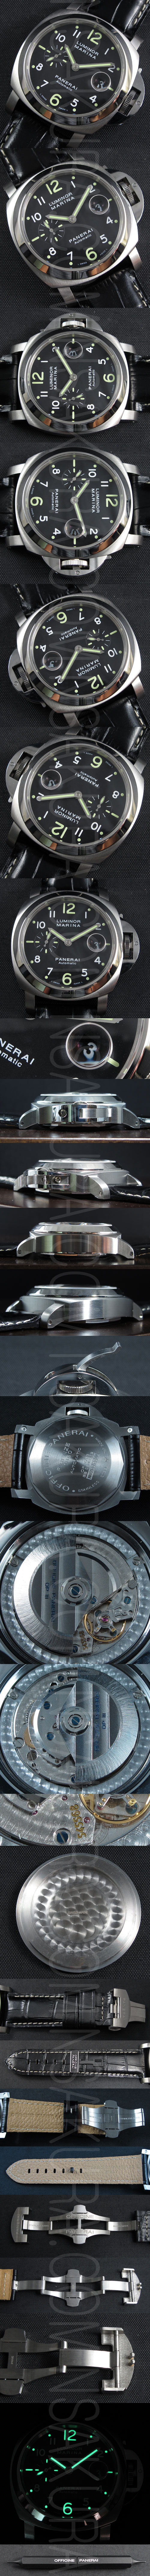 スーパーコピー時計パネライ ルミノール マリーナ PAM164　，ハイエンドモデル - ウインドウを閉じる